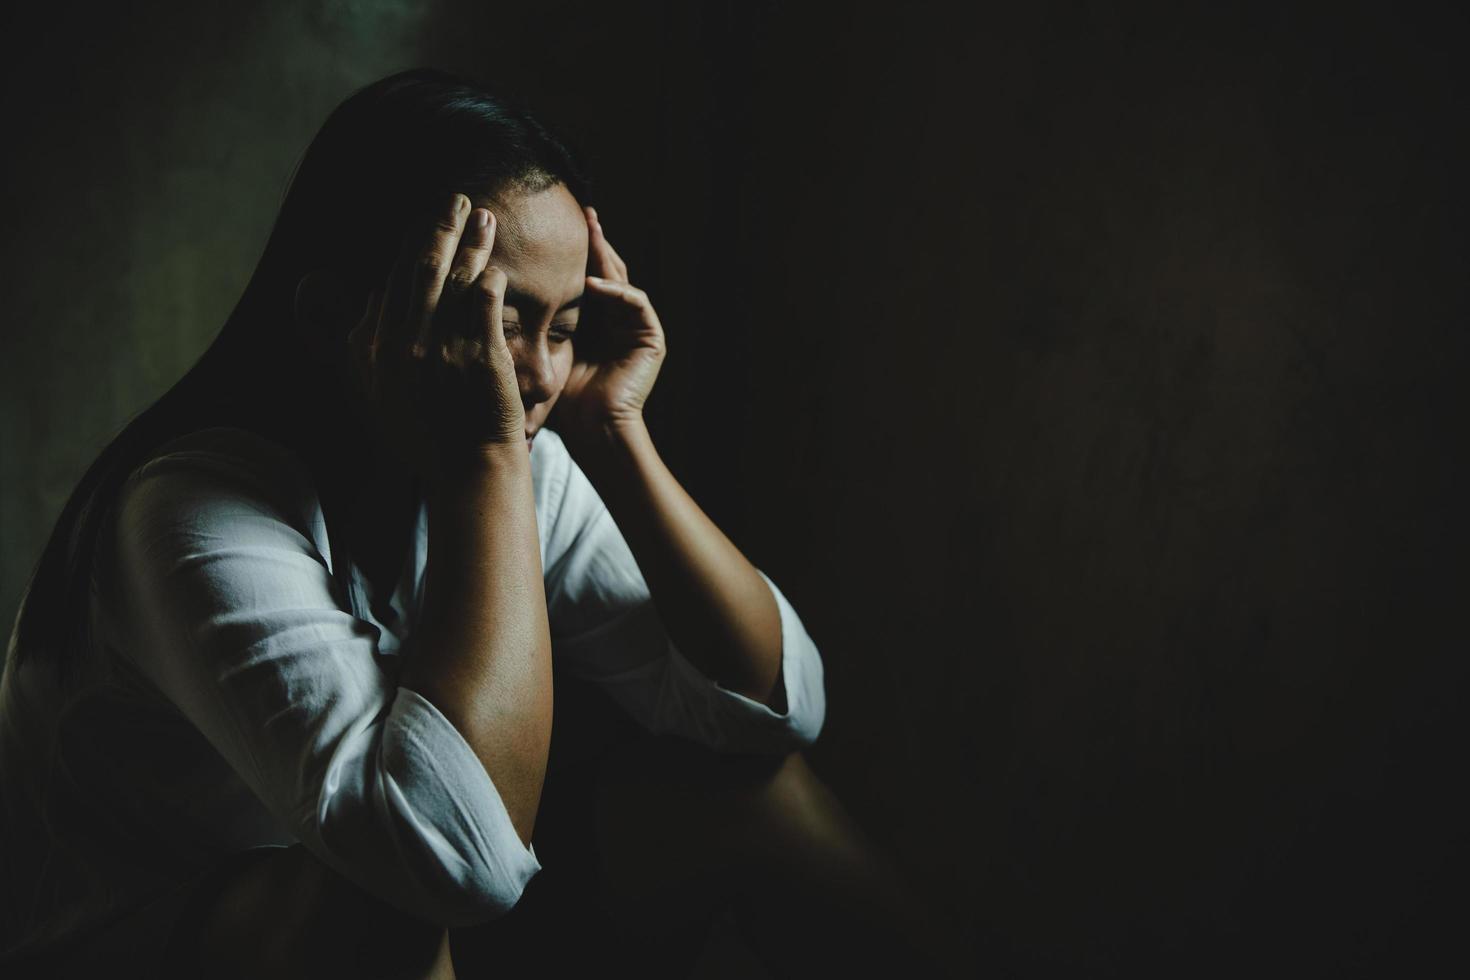 vrouw verdrietig, stress en eenzaamheid zittend in een donkere kamer, ongelukkig en huilend tienermeisje van huiselijk geweld, een volwassen vrouw drukt gevoelens van wanhoop uit, angst door intimidatie. foto